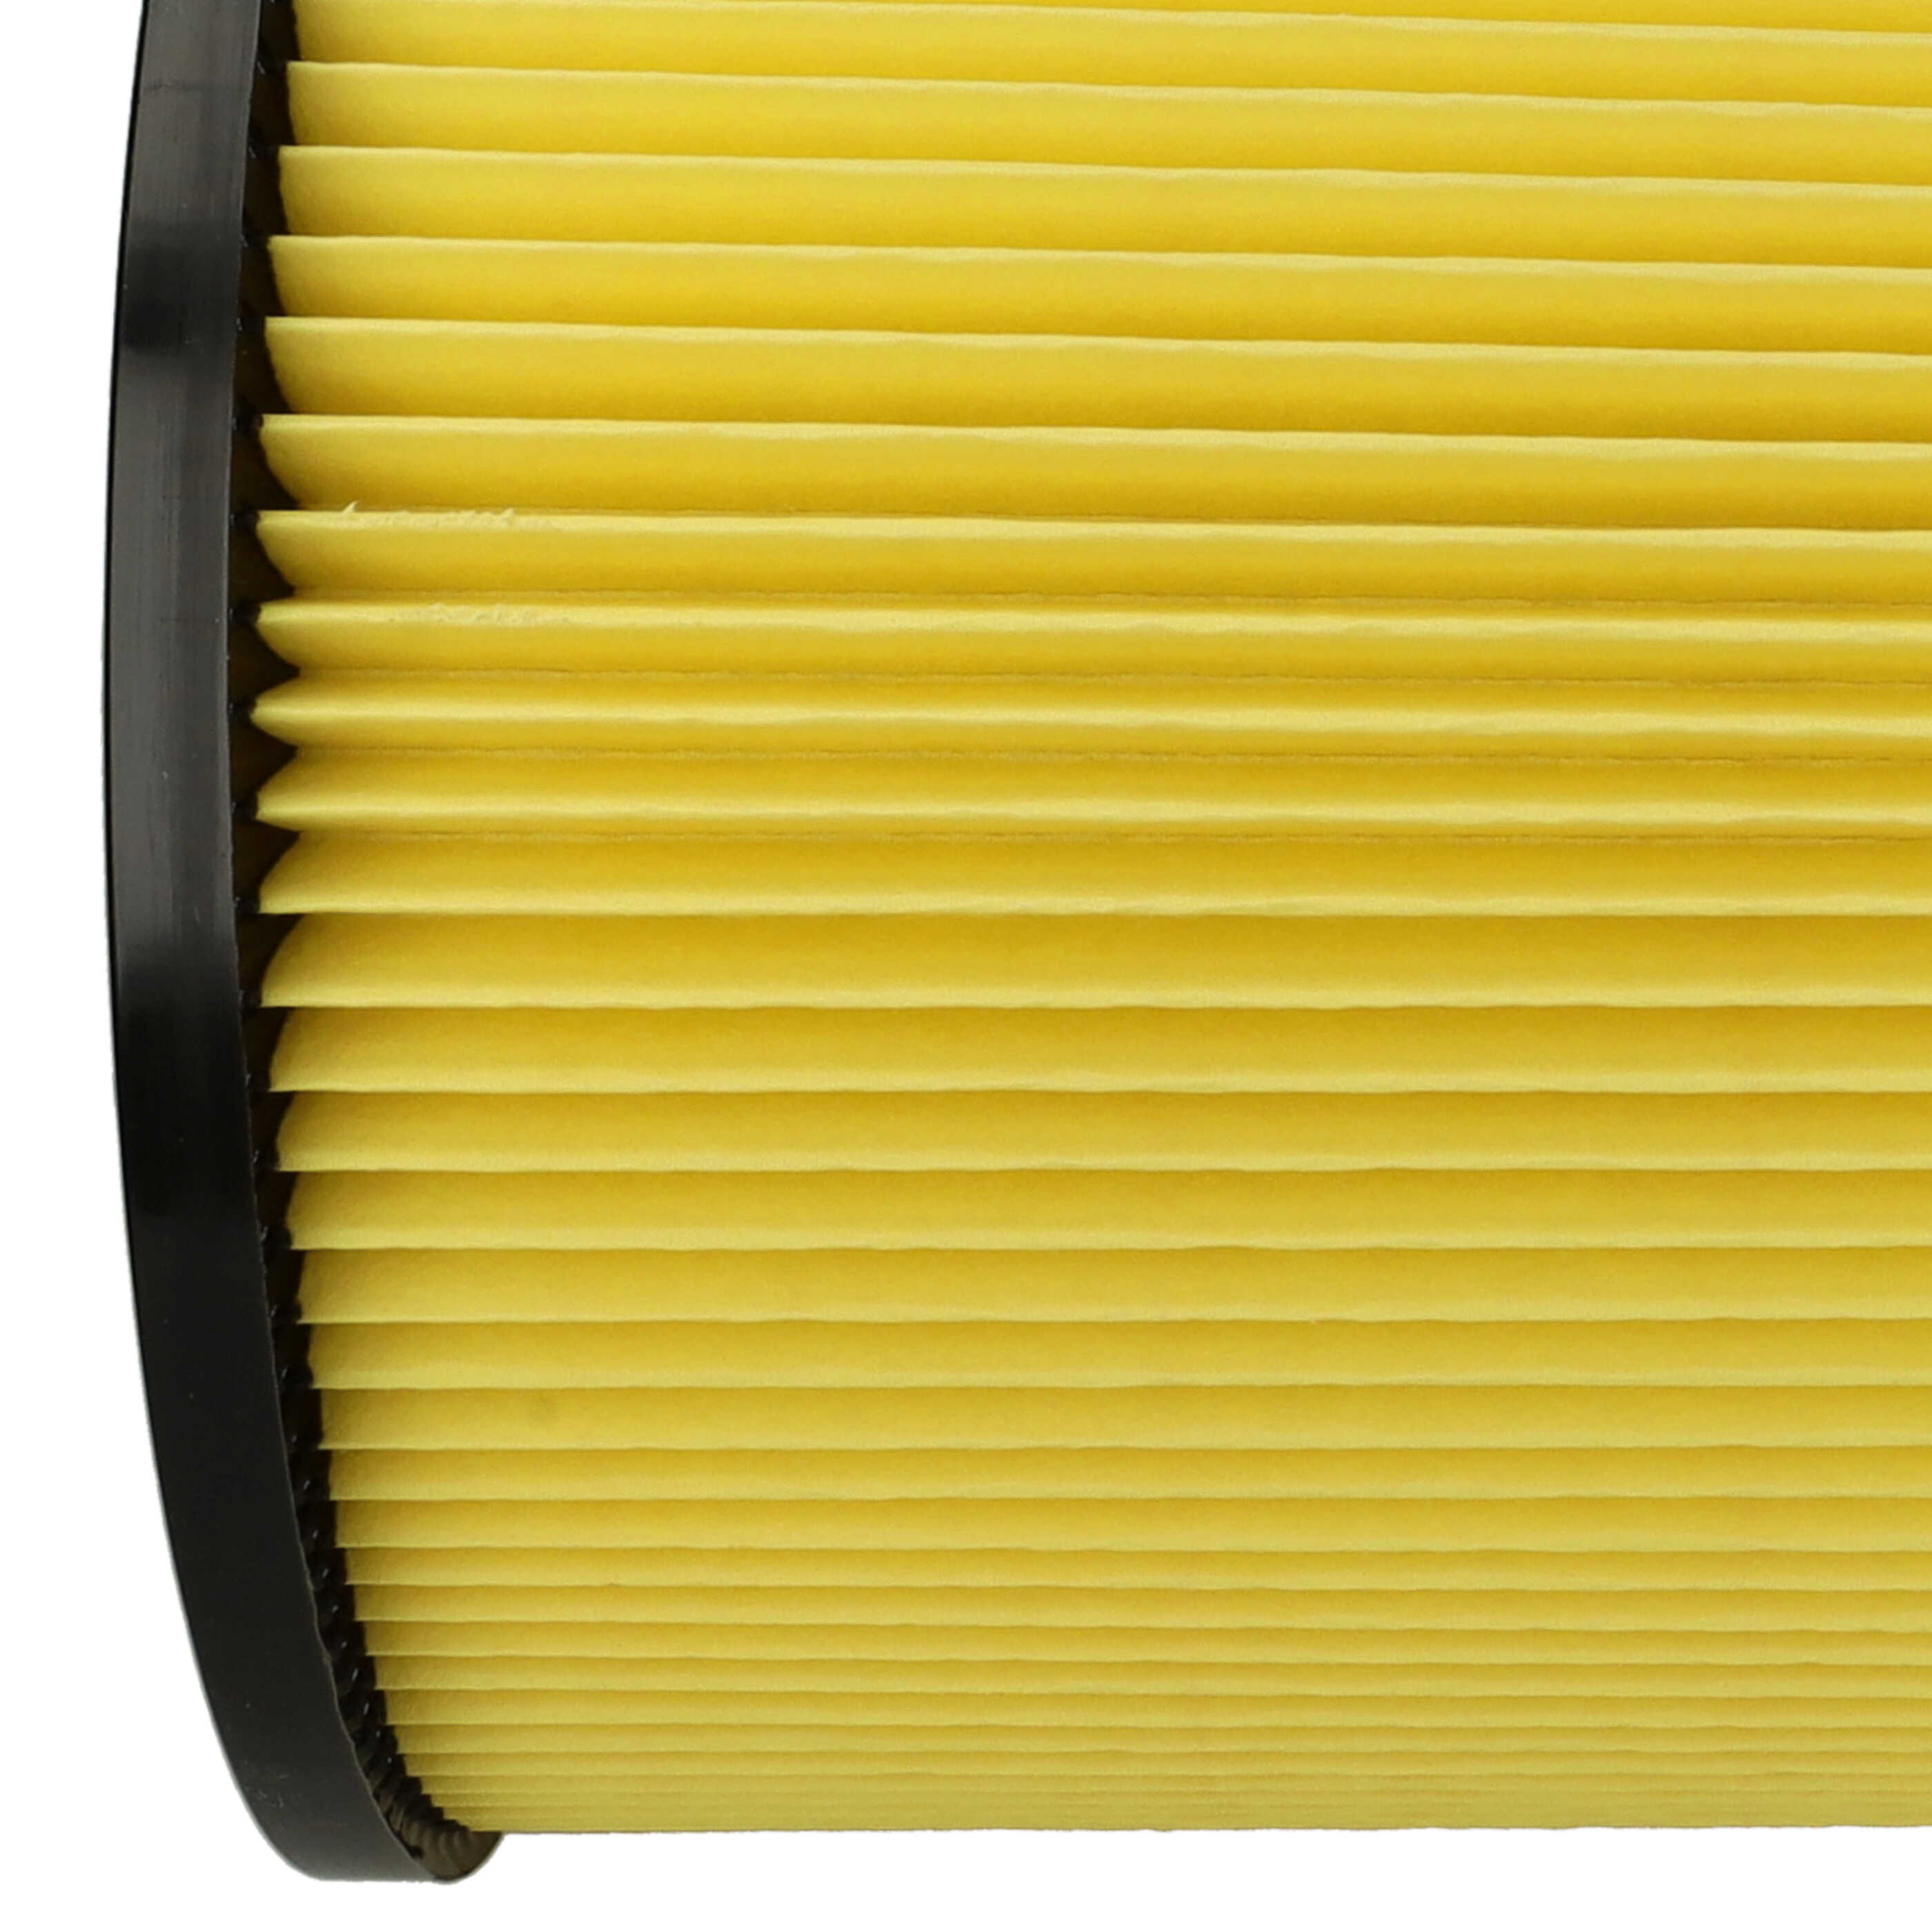 Filtr do odkurzacza Thomas zamiennik Thomas 787115, 195118 - wkład filtracyjny, czarny / żółty